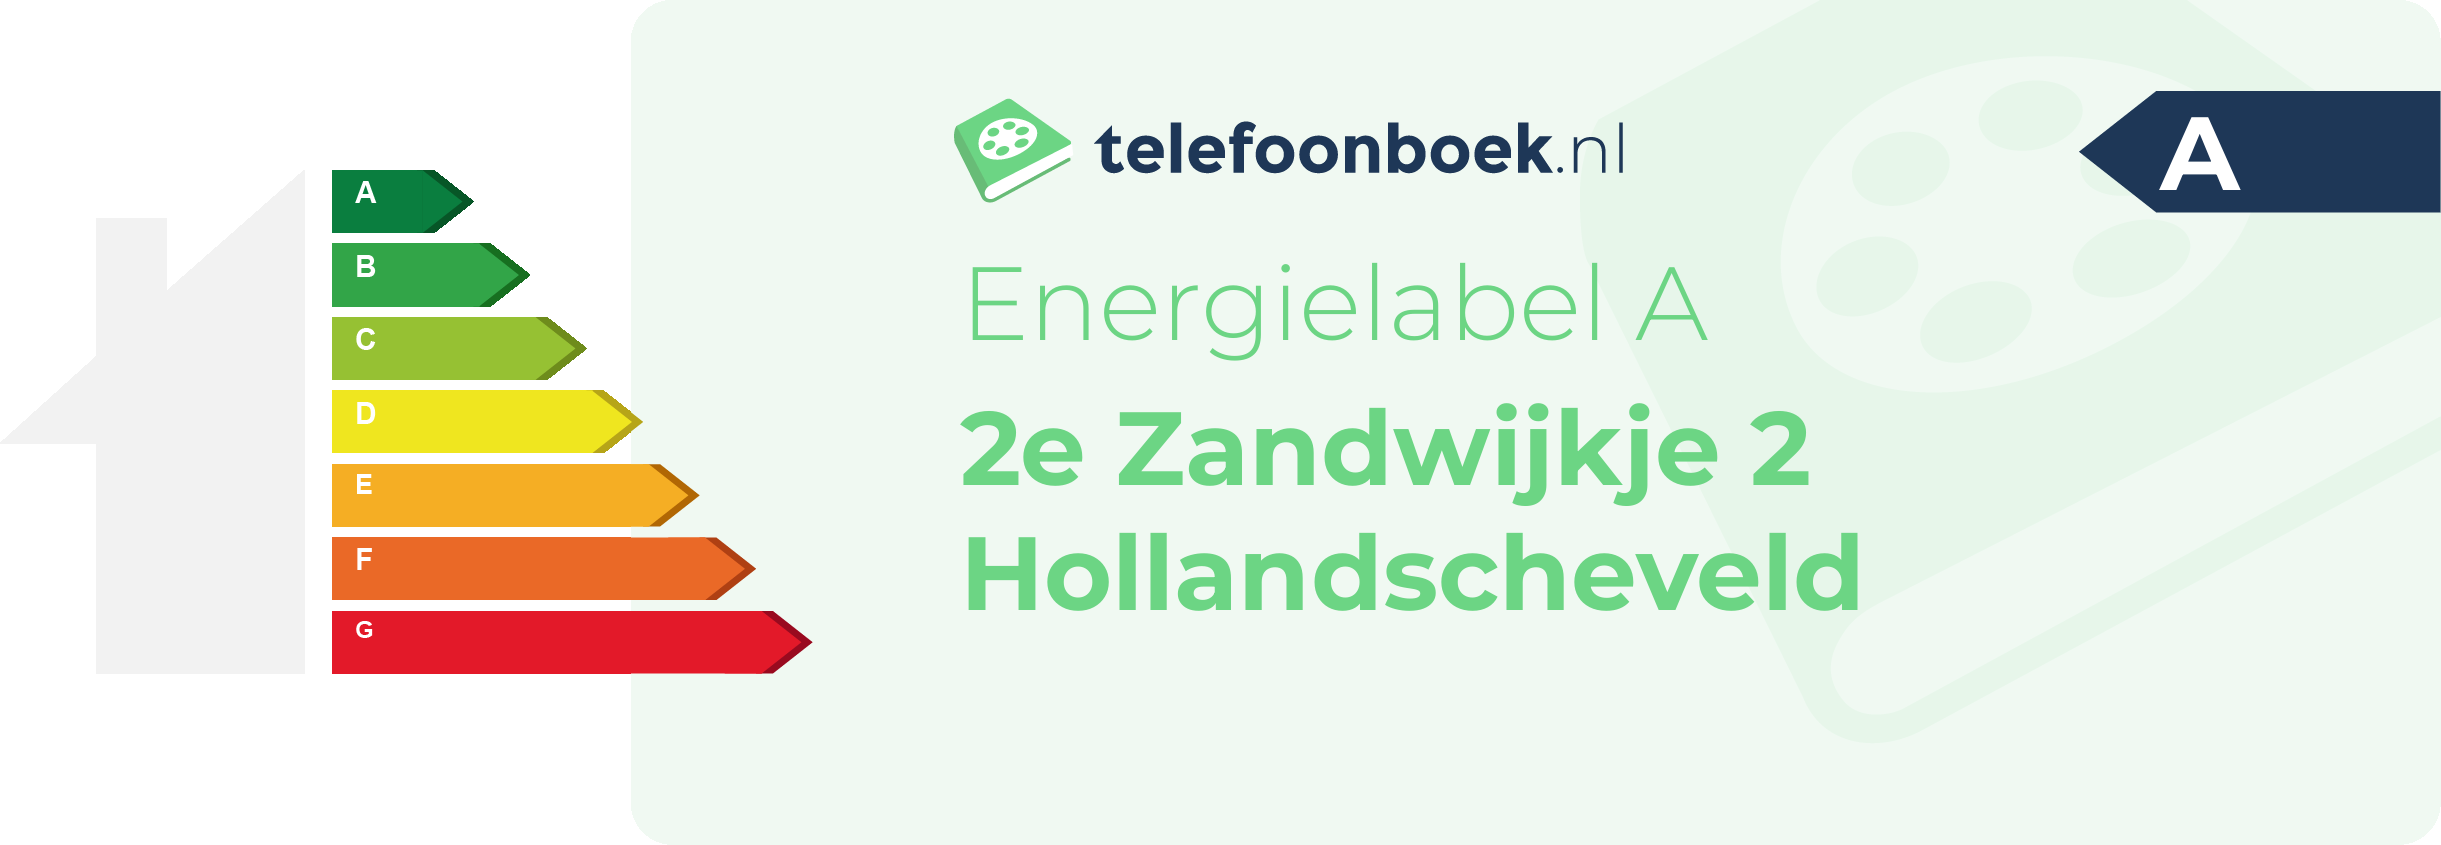 Energielabel 2e Zandwijkje 2 Hollandscheveld